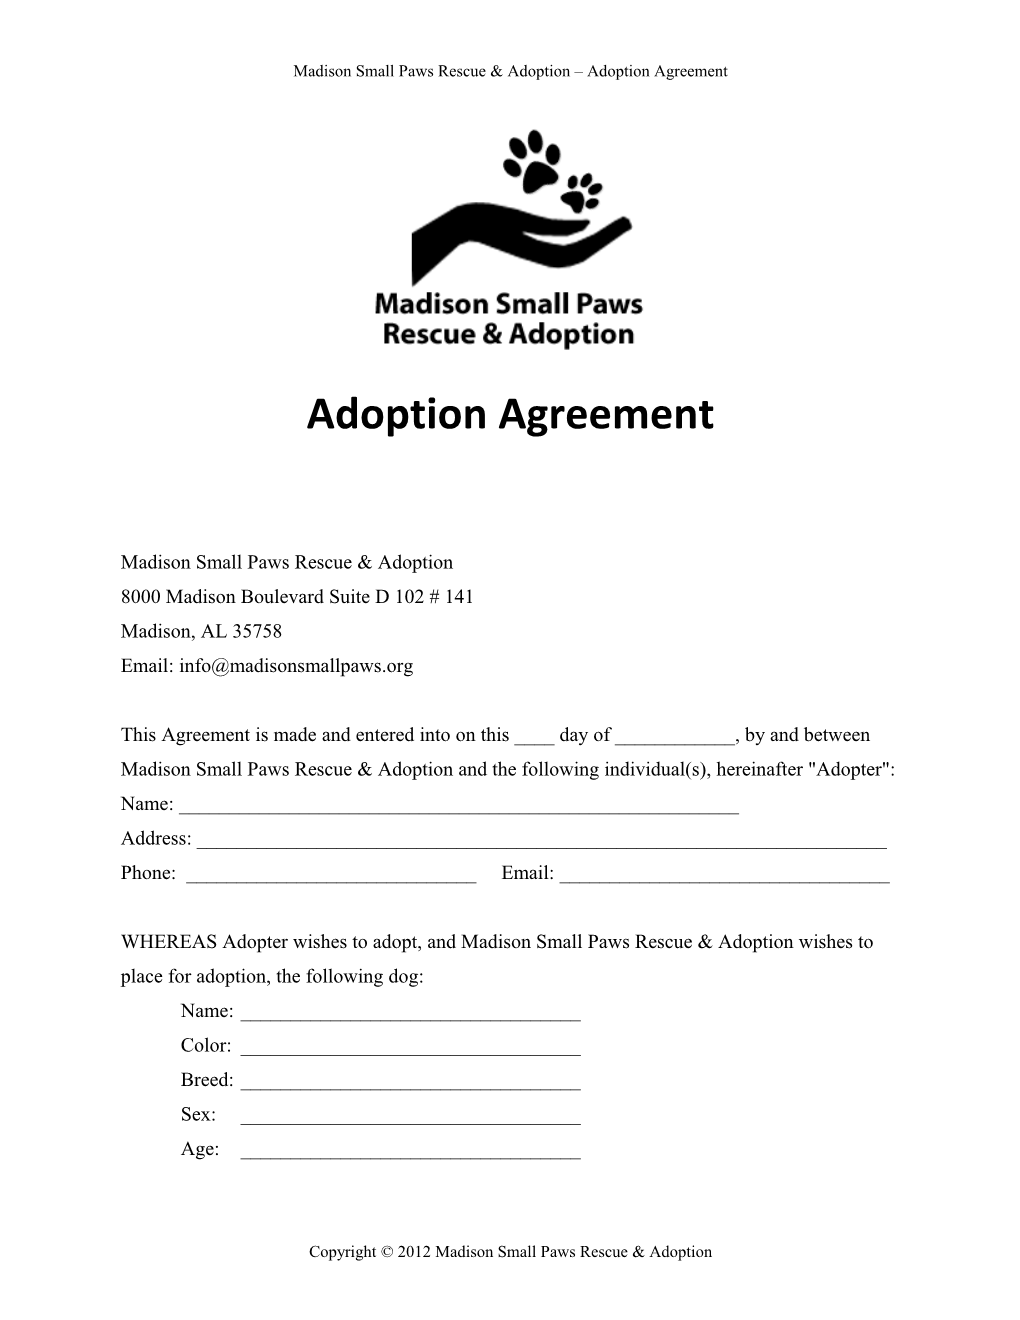 Madison Small Paws Rescue & Adoption Adoption Agreement